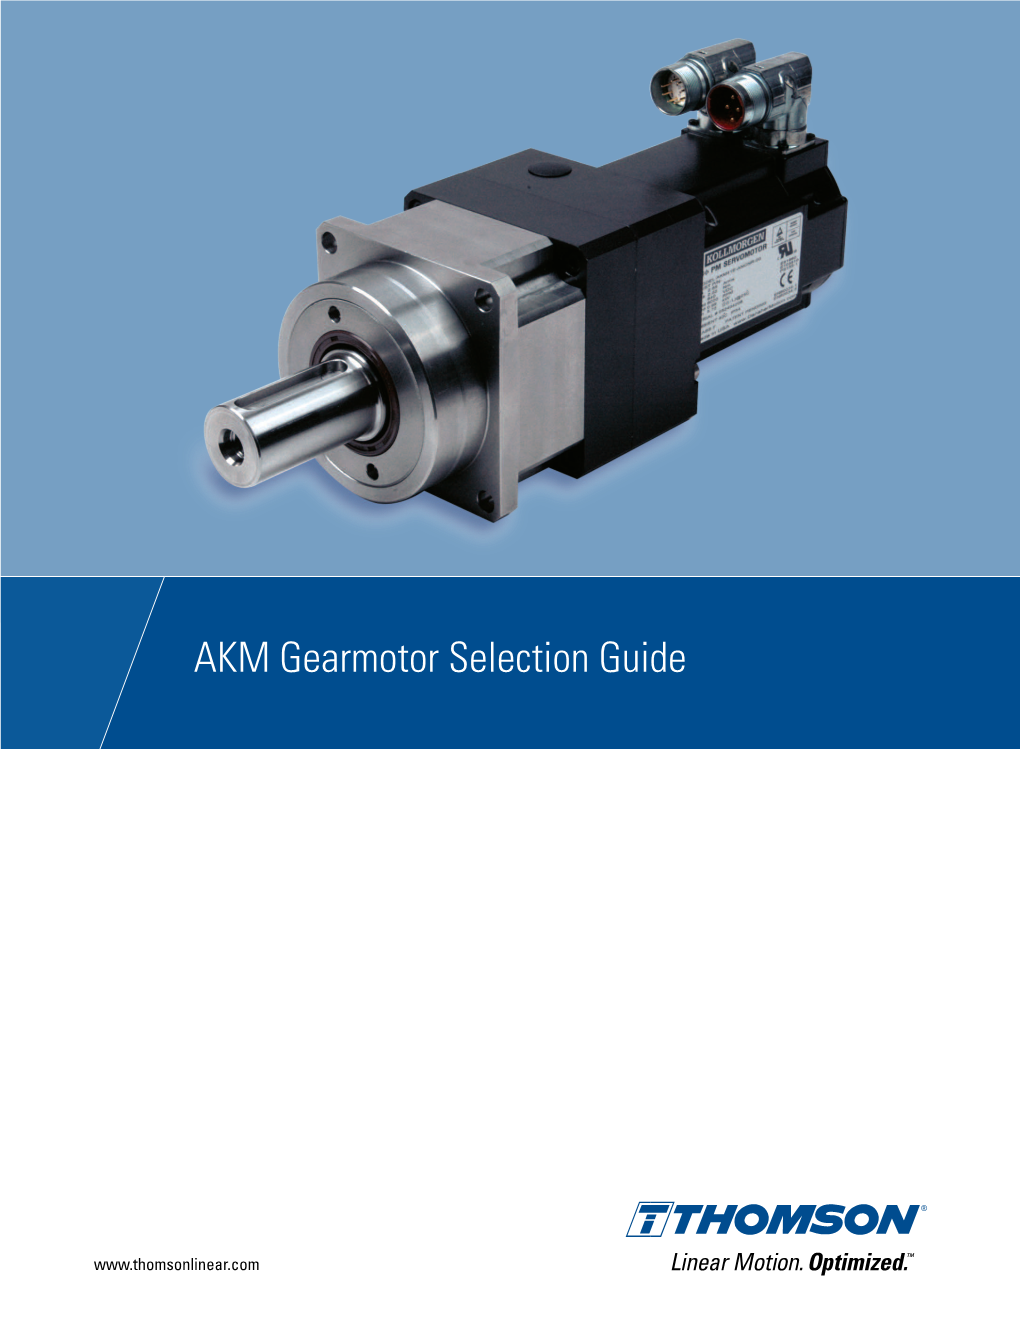 AKM Gearmotor Selection Guide